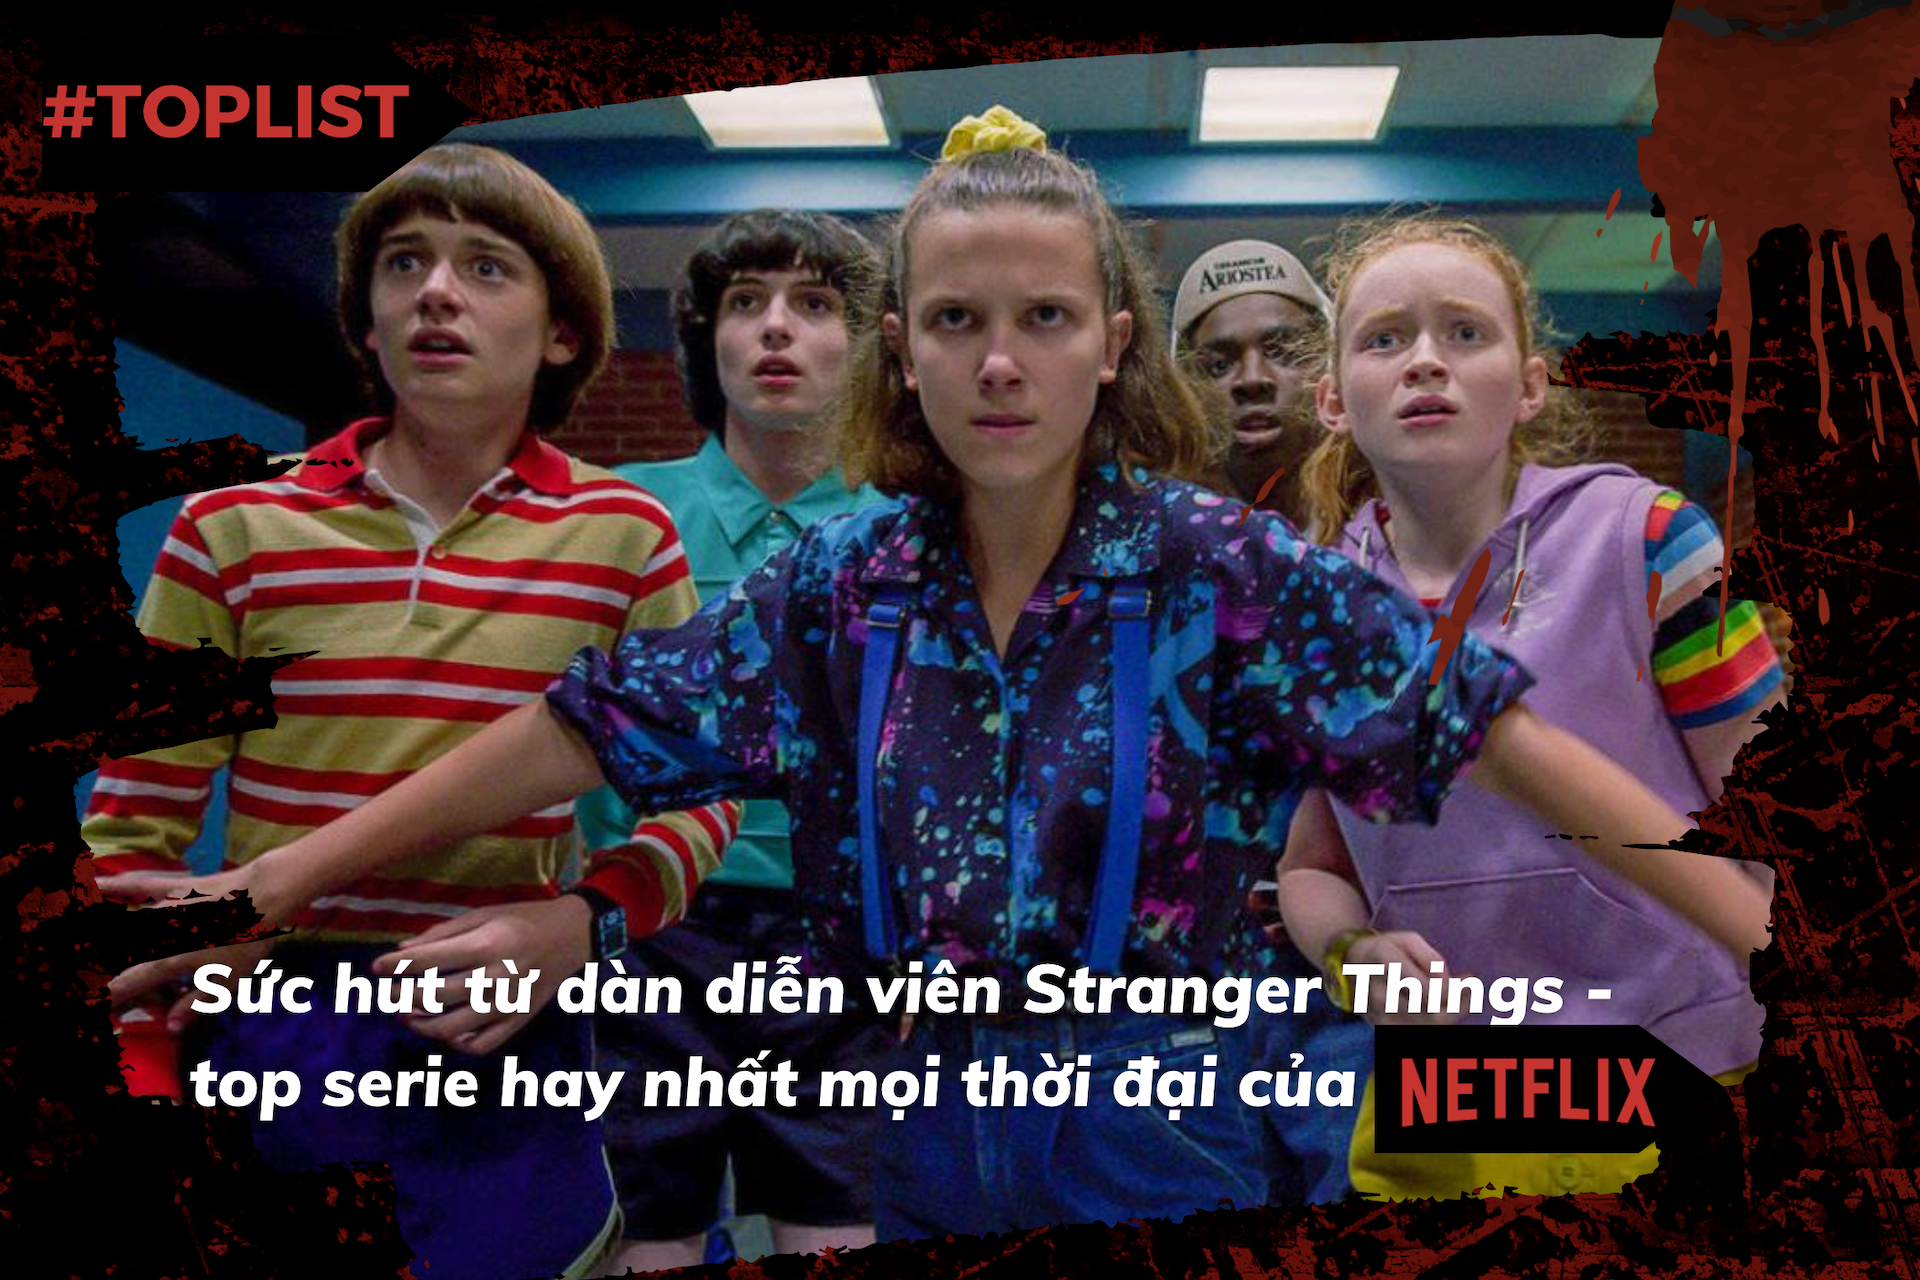 #Toplist: Sức hút từ dàn diễn viên Stranger Things - top serie hay nhất mọi thời đại của Netflix